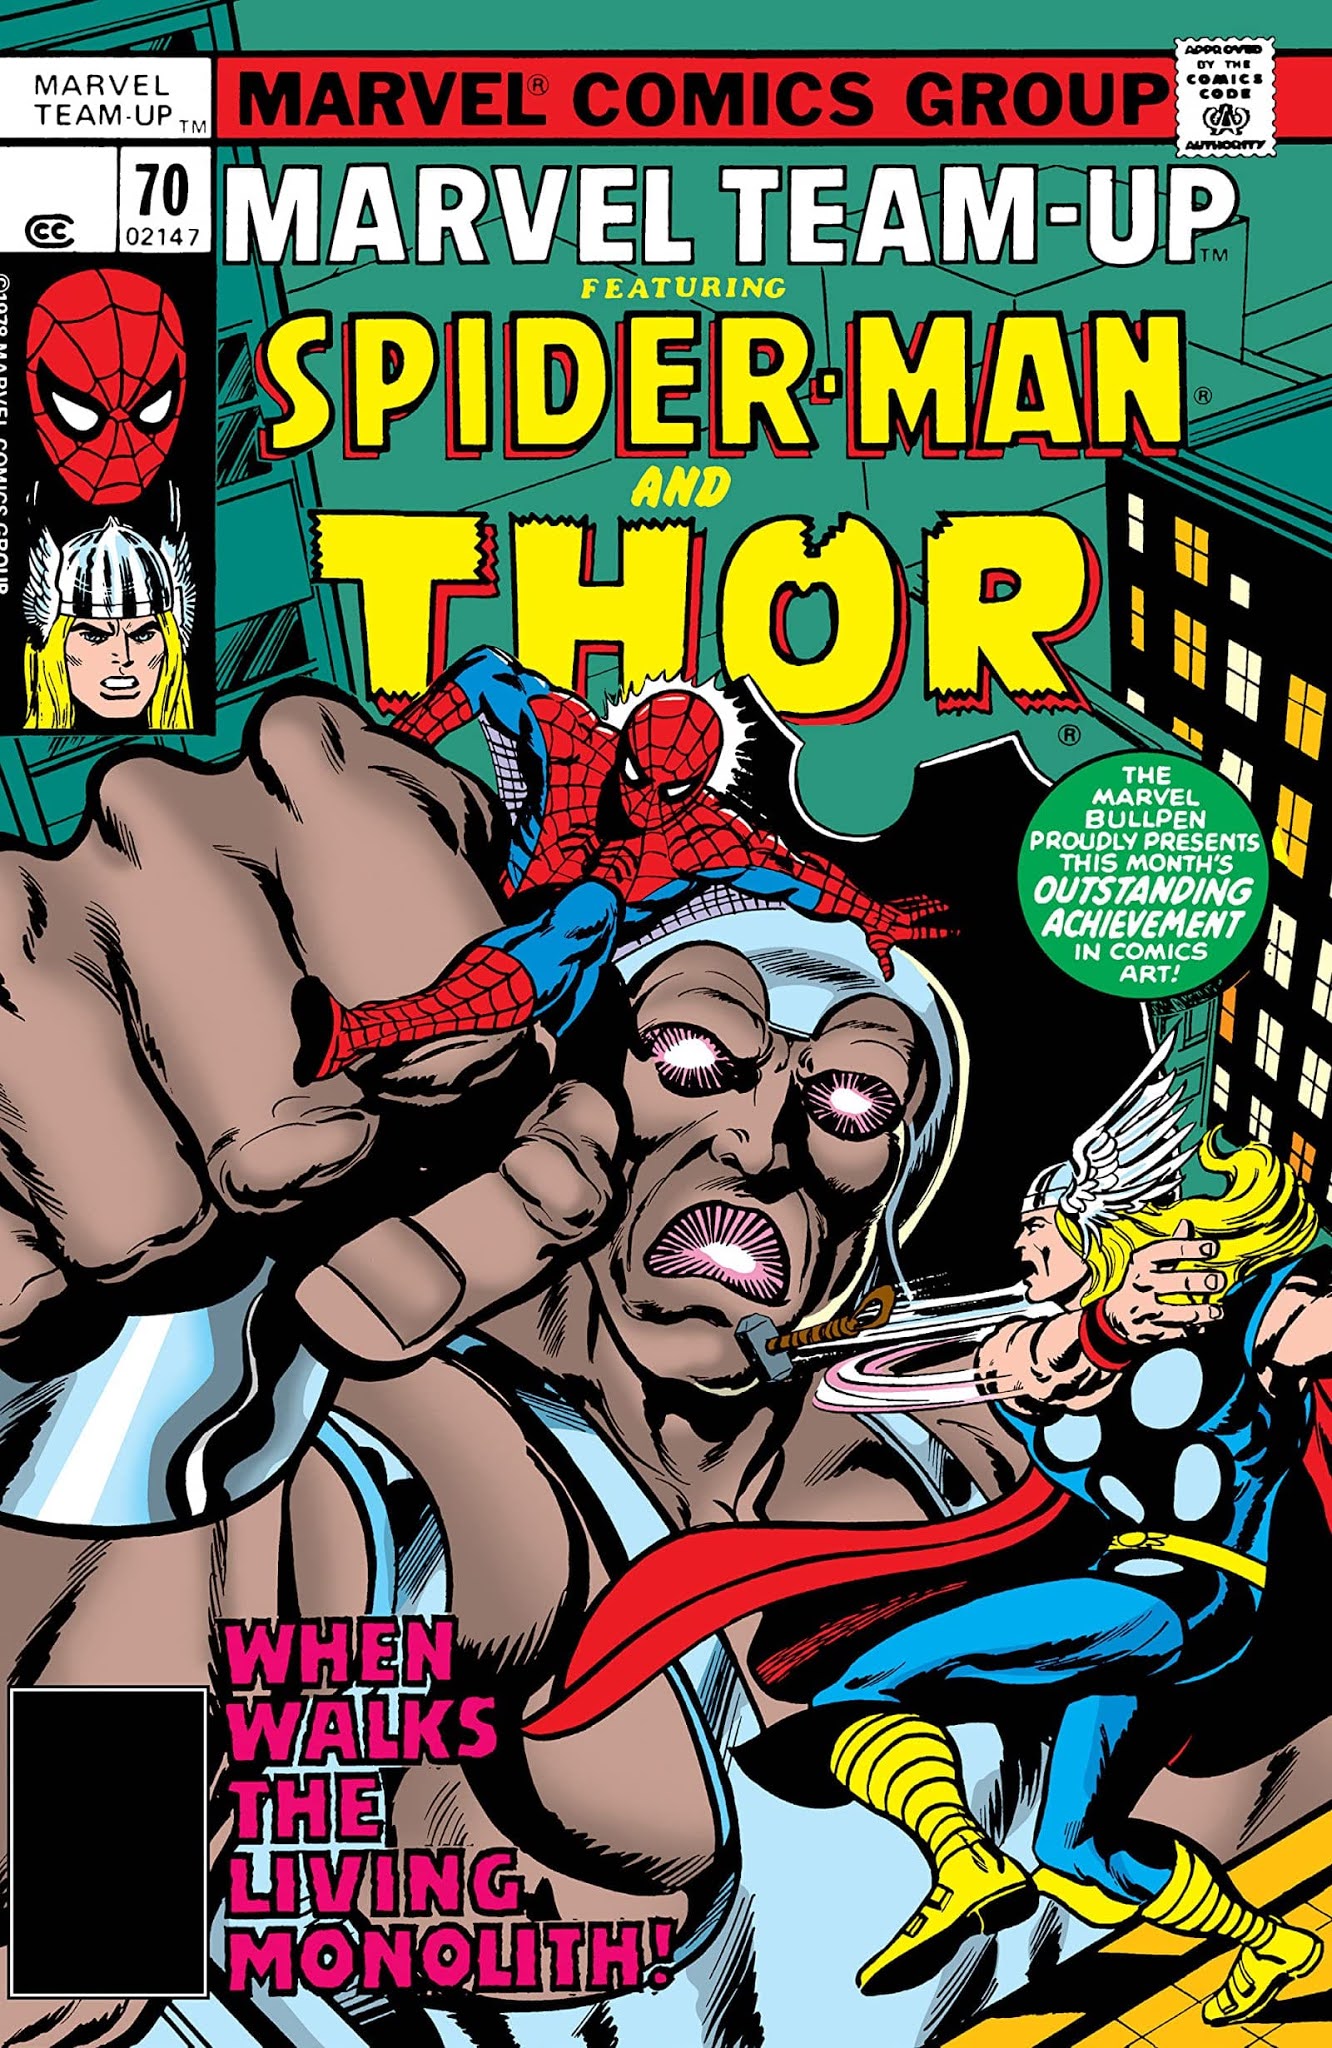 Spiderman: Marvel Team-Up de Chris Claremont y John Byrne